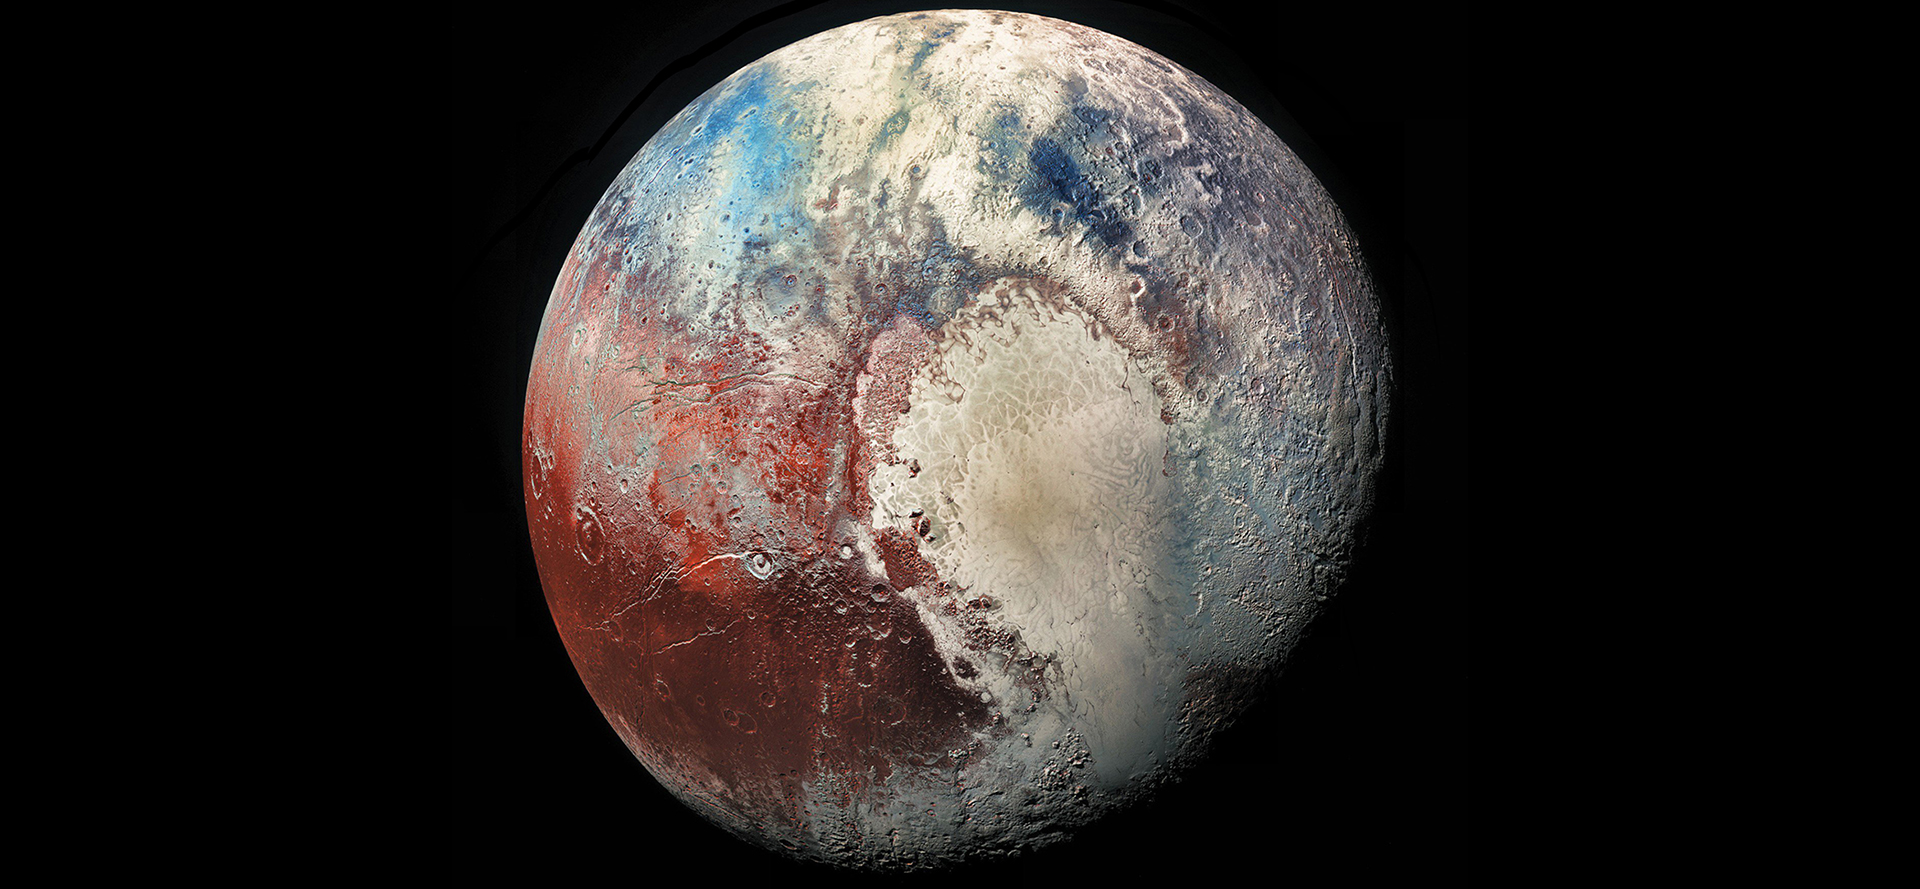 Pluto planet.